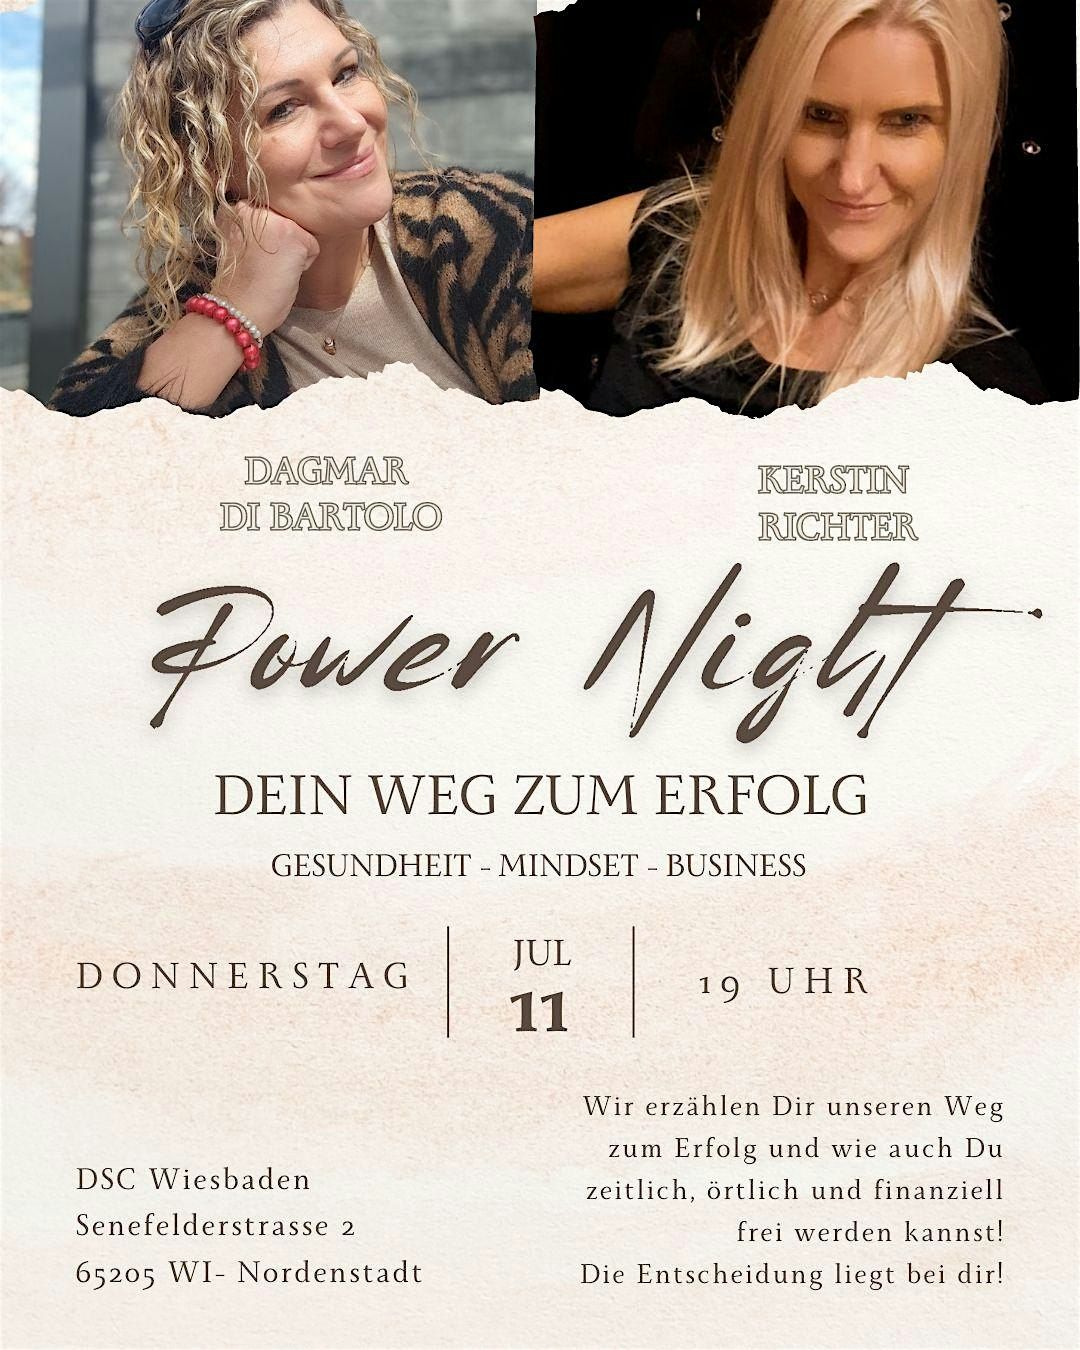 Power Night - Dein Weg zum Erfolg - DCS Wiesbaden 11.07.24 19-21h